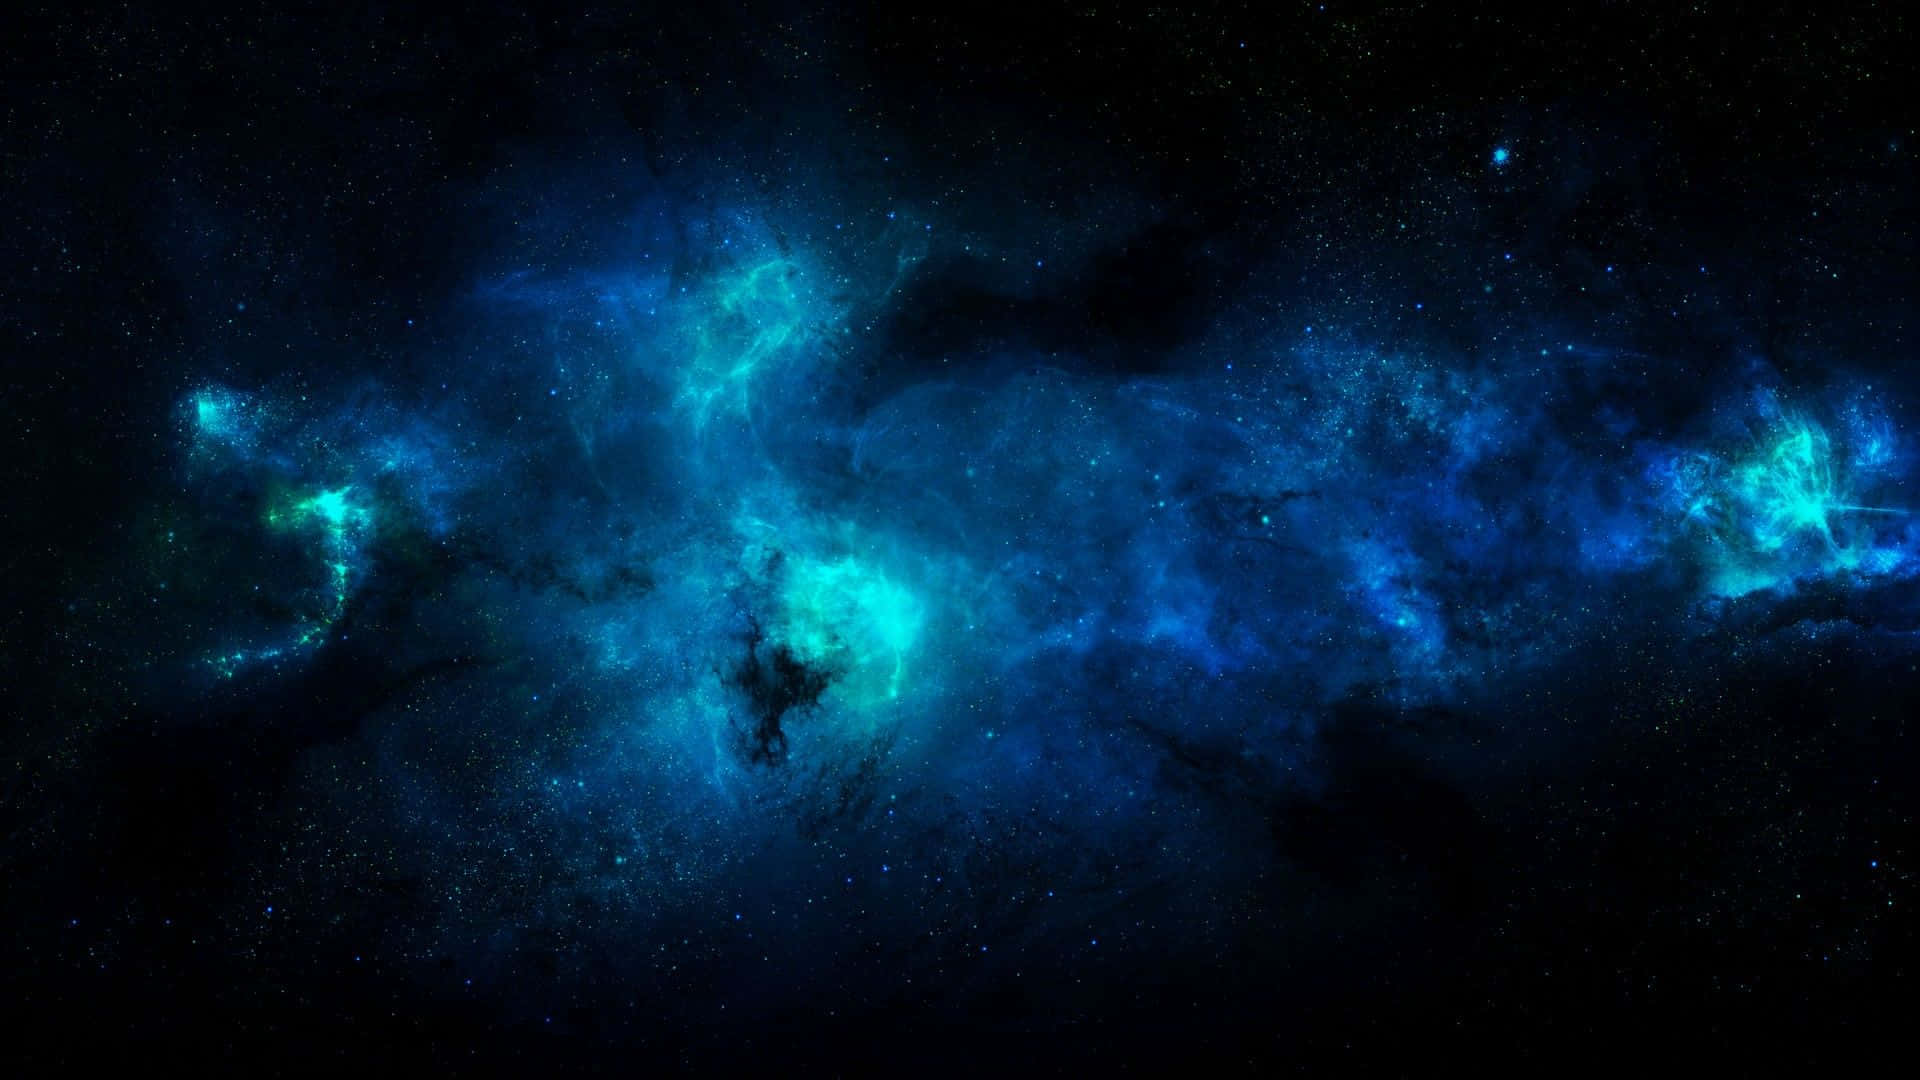 Enensam Representation Av Skönhet Och Ro, Denna Coola Blåa Galax Kommer Säkert Att Transportera Dig Till En Annan Universum. Wallpaper